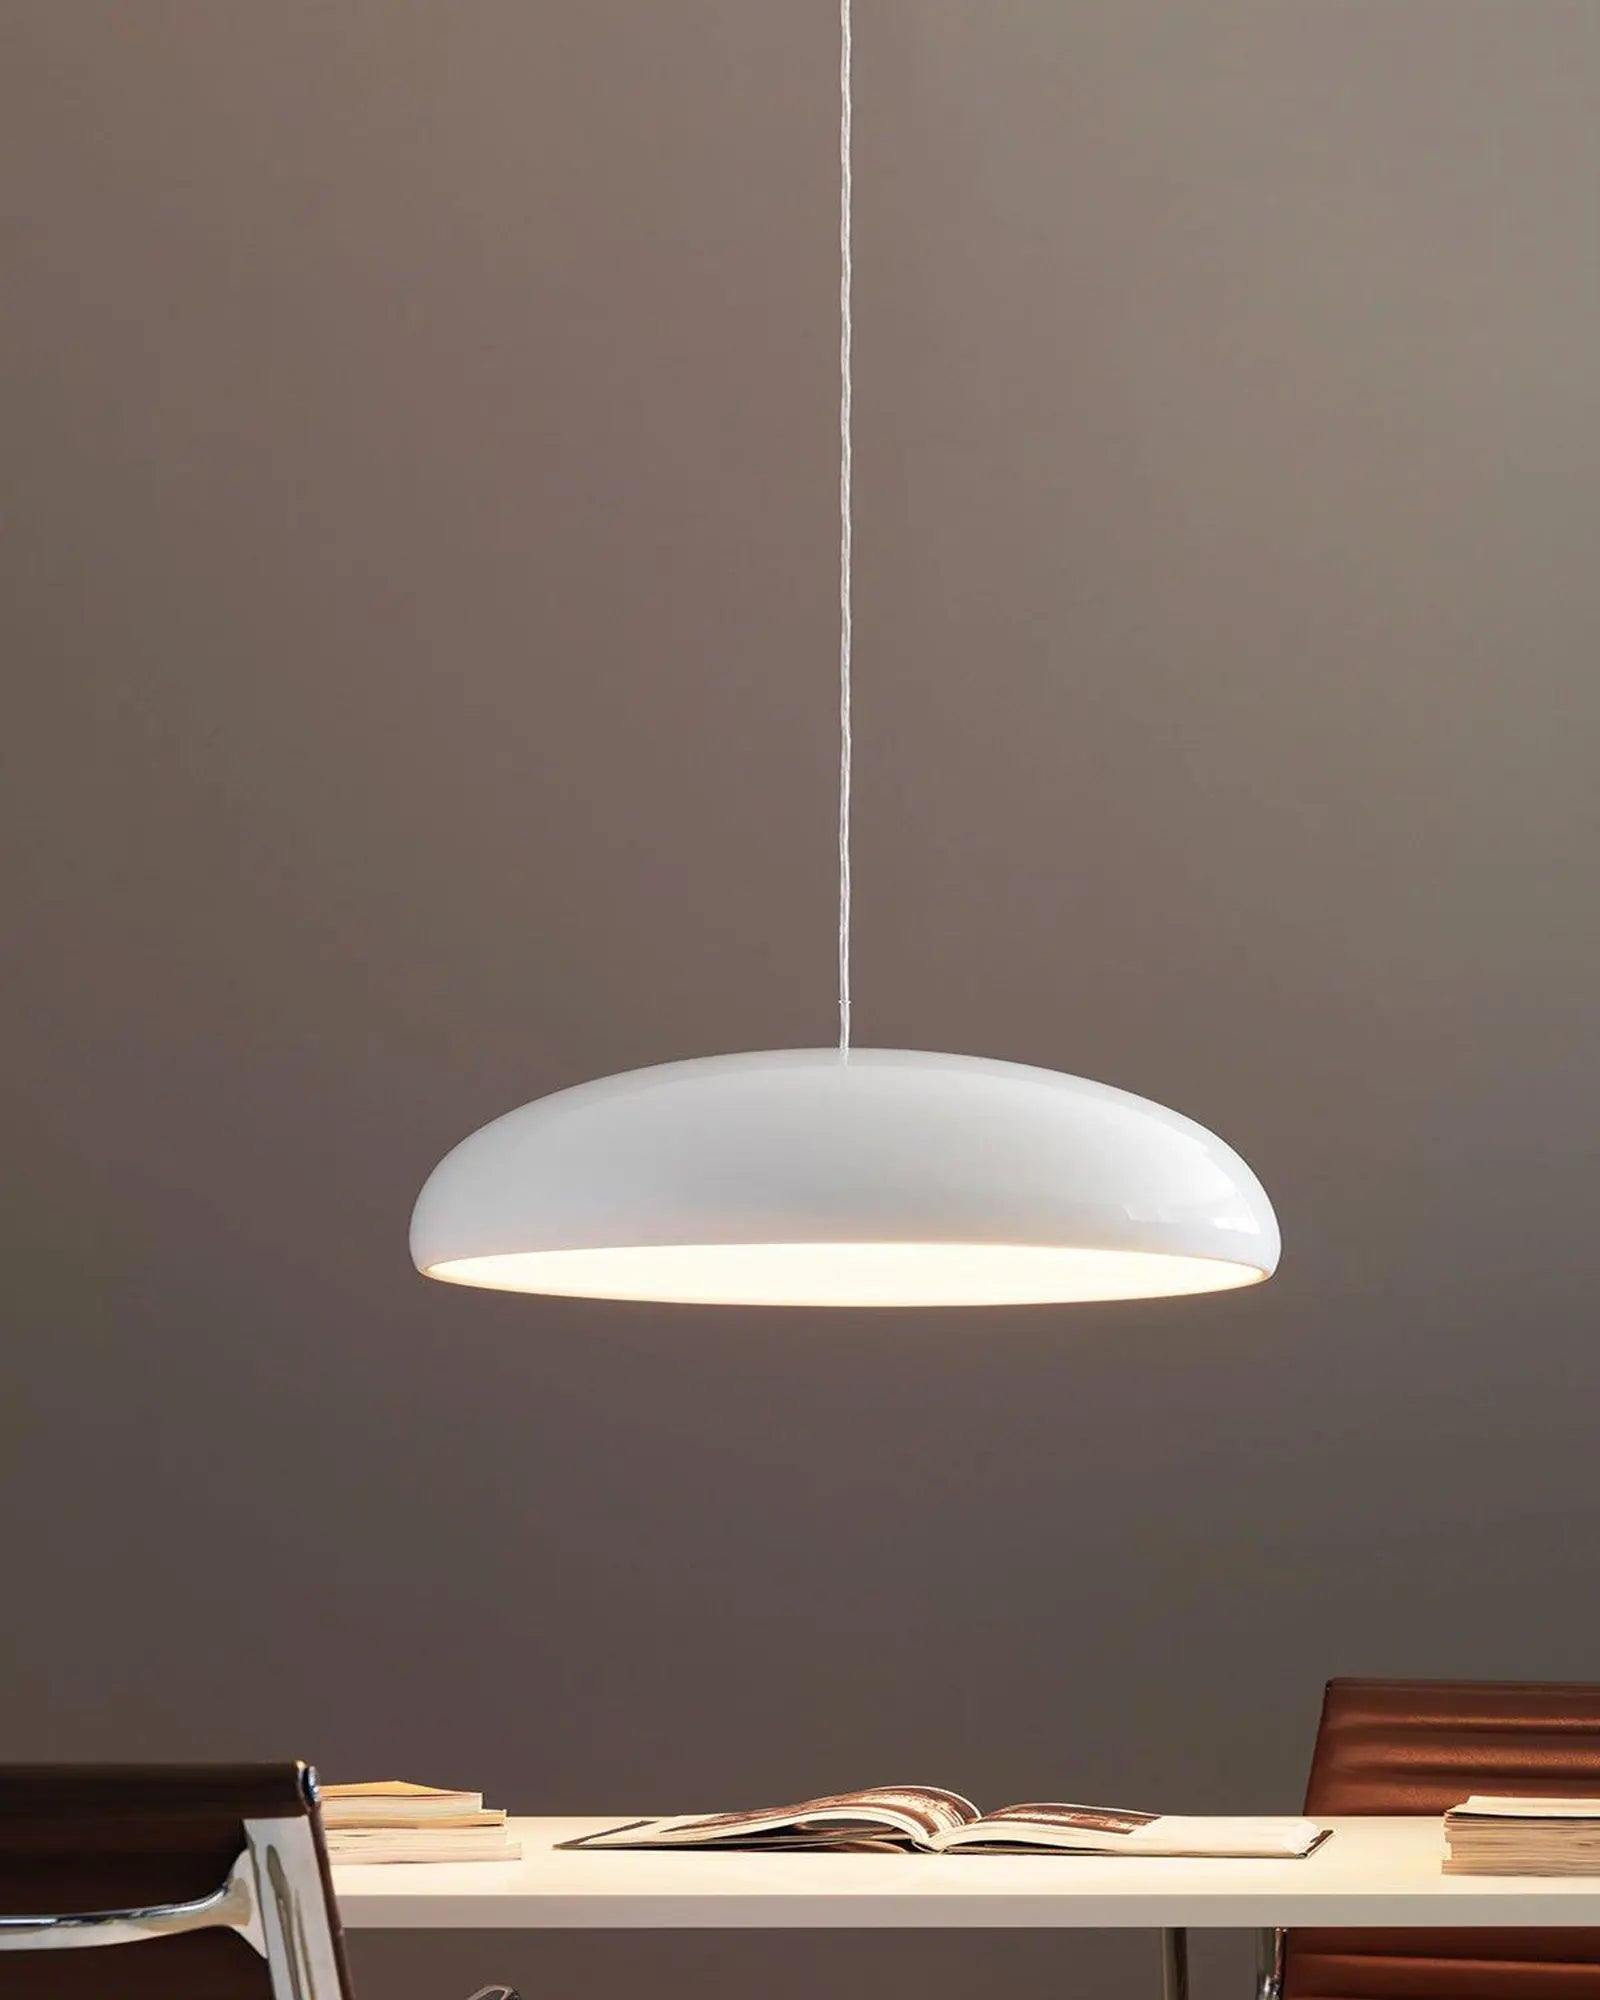 Pangen pendant light above a desk